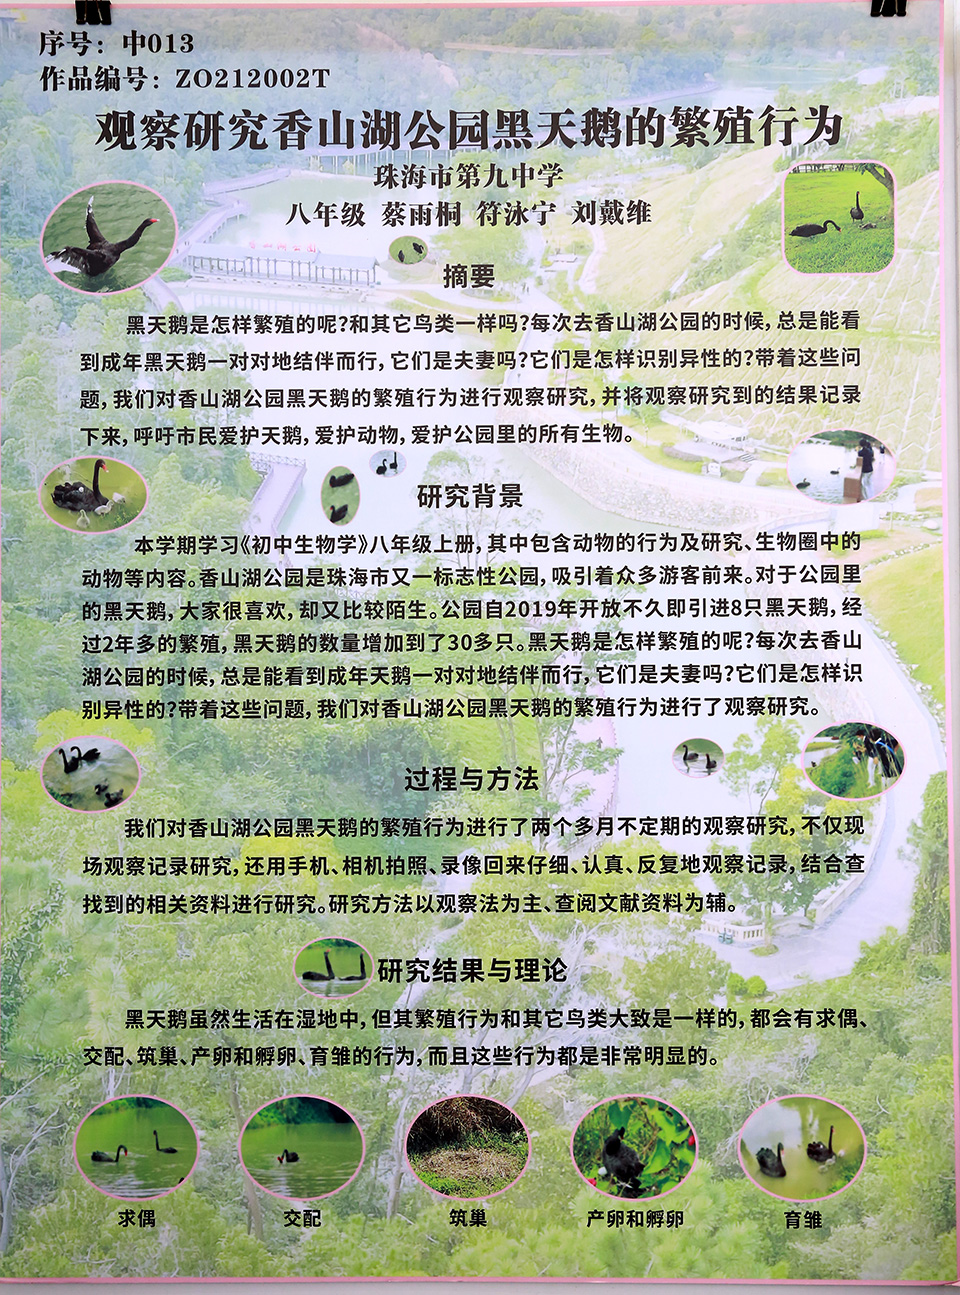 观察研究香山湖公园黑天鹅的繁殖行为